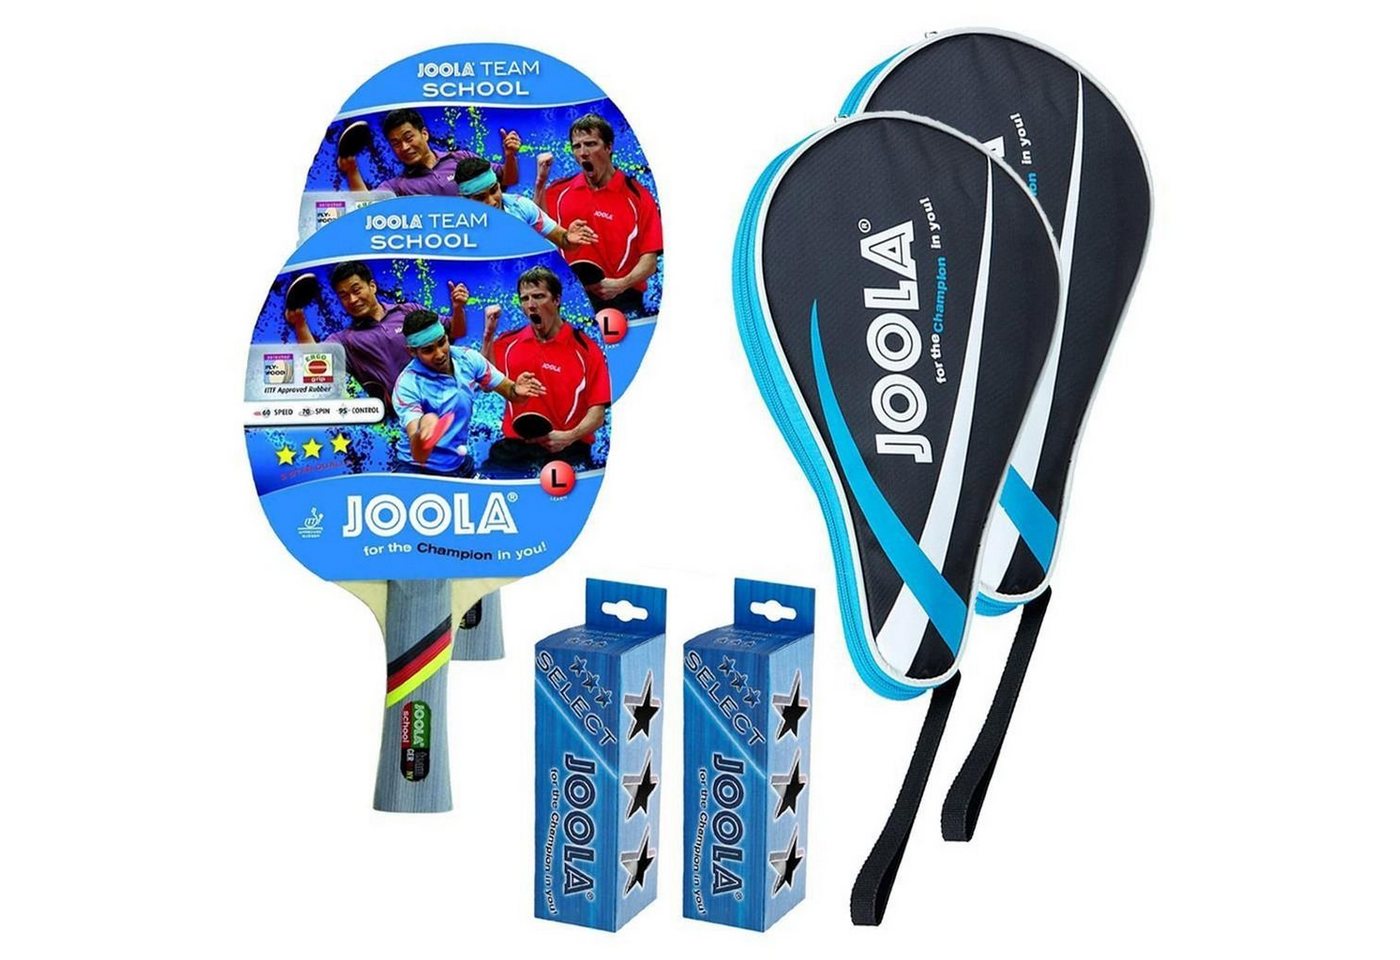 Joola Tischtennisschläger 2x Team School + 2x Pocket blau + 6 Bälle, Tischtennis Schläger Set Tischtennisset Table Tennis Bat Racket von Joola